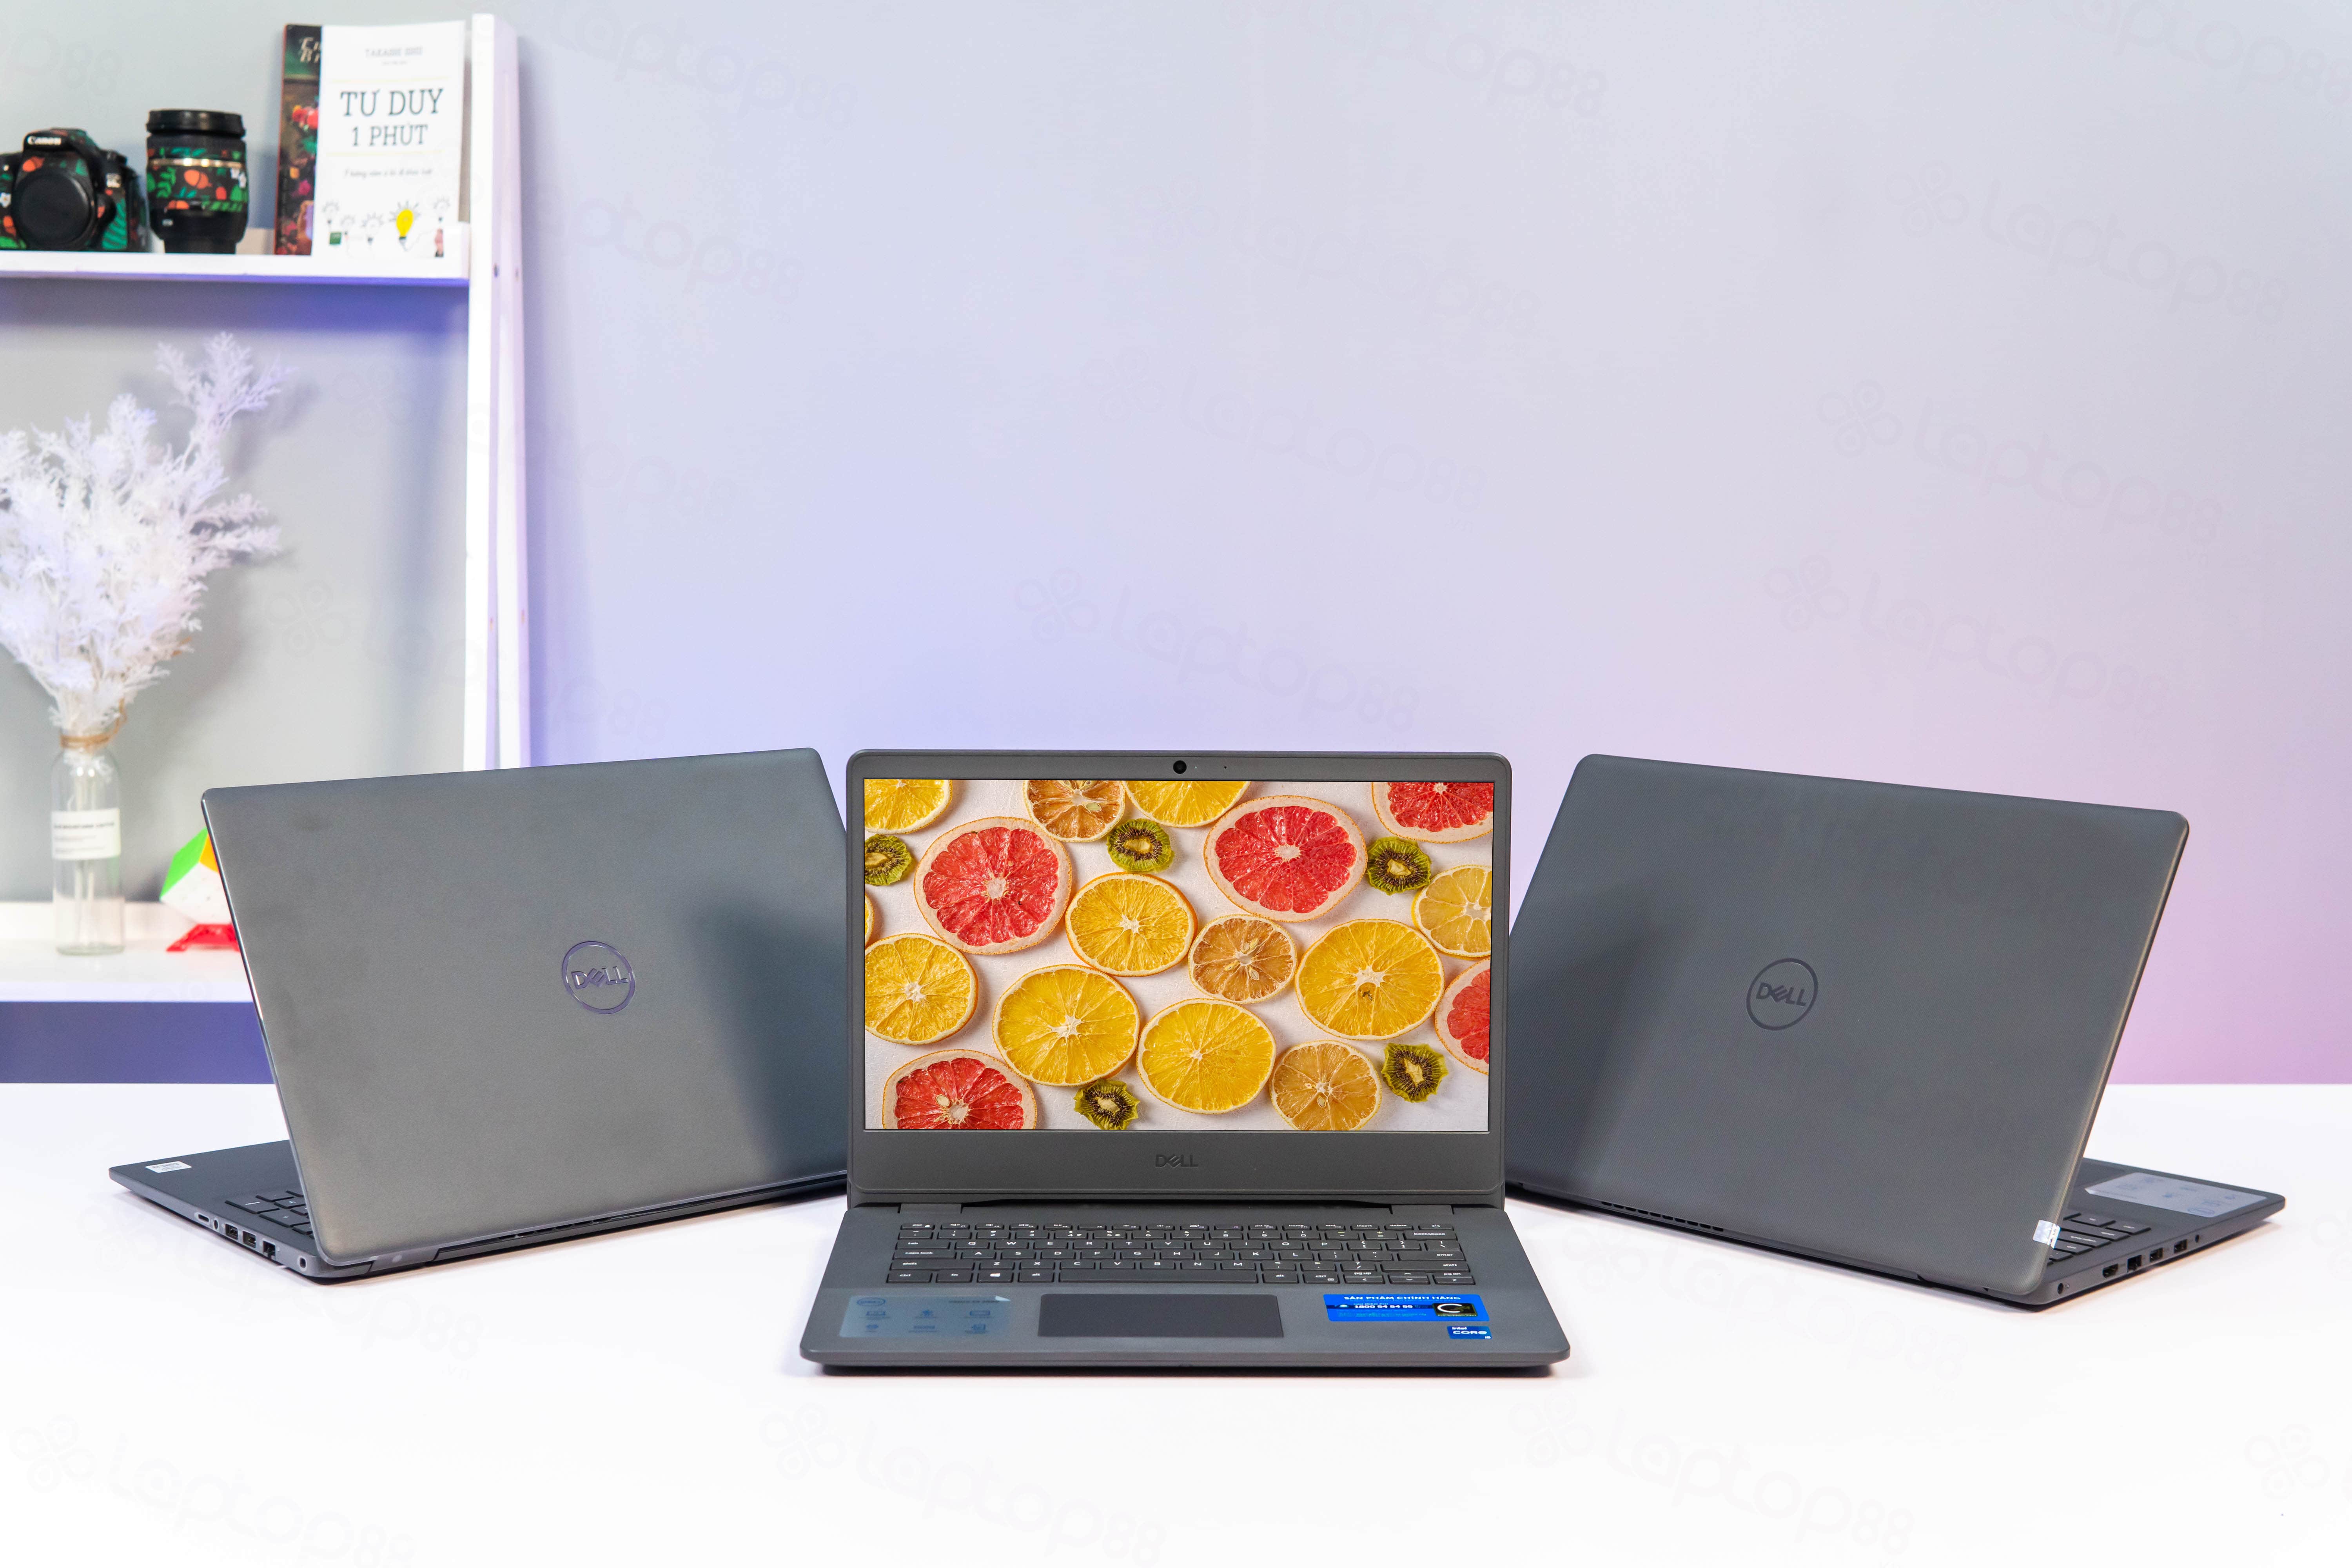 Điểm danh các mẫu laptop Dell mỏng nhẹ hot giá rẻ nhất 2021 -2022